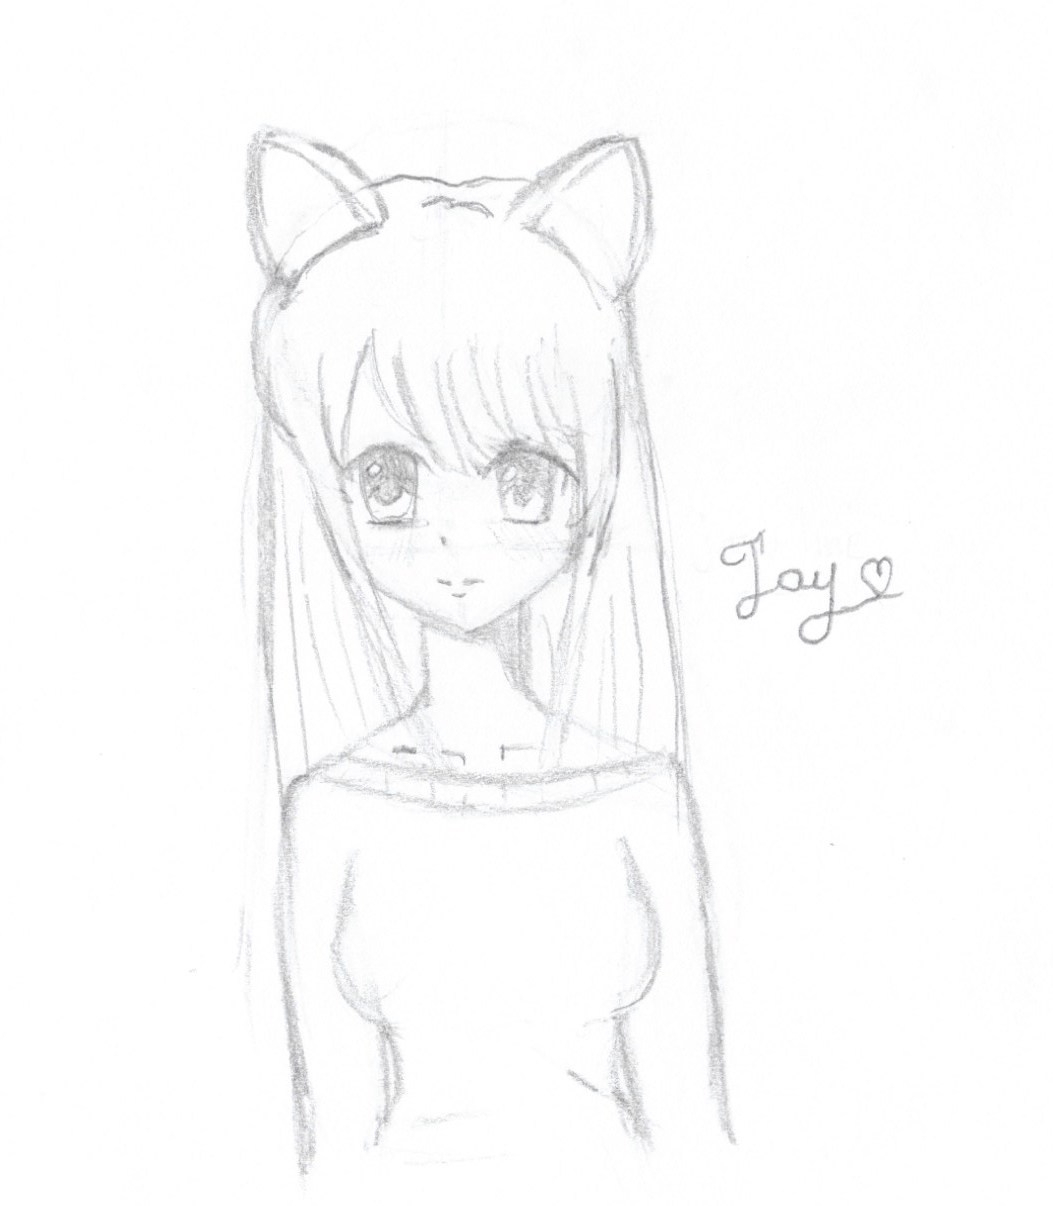  Anime Girl Beginner Simple Easy Drawings Of Girls - Jameslemingthon Blog